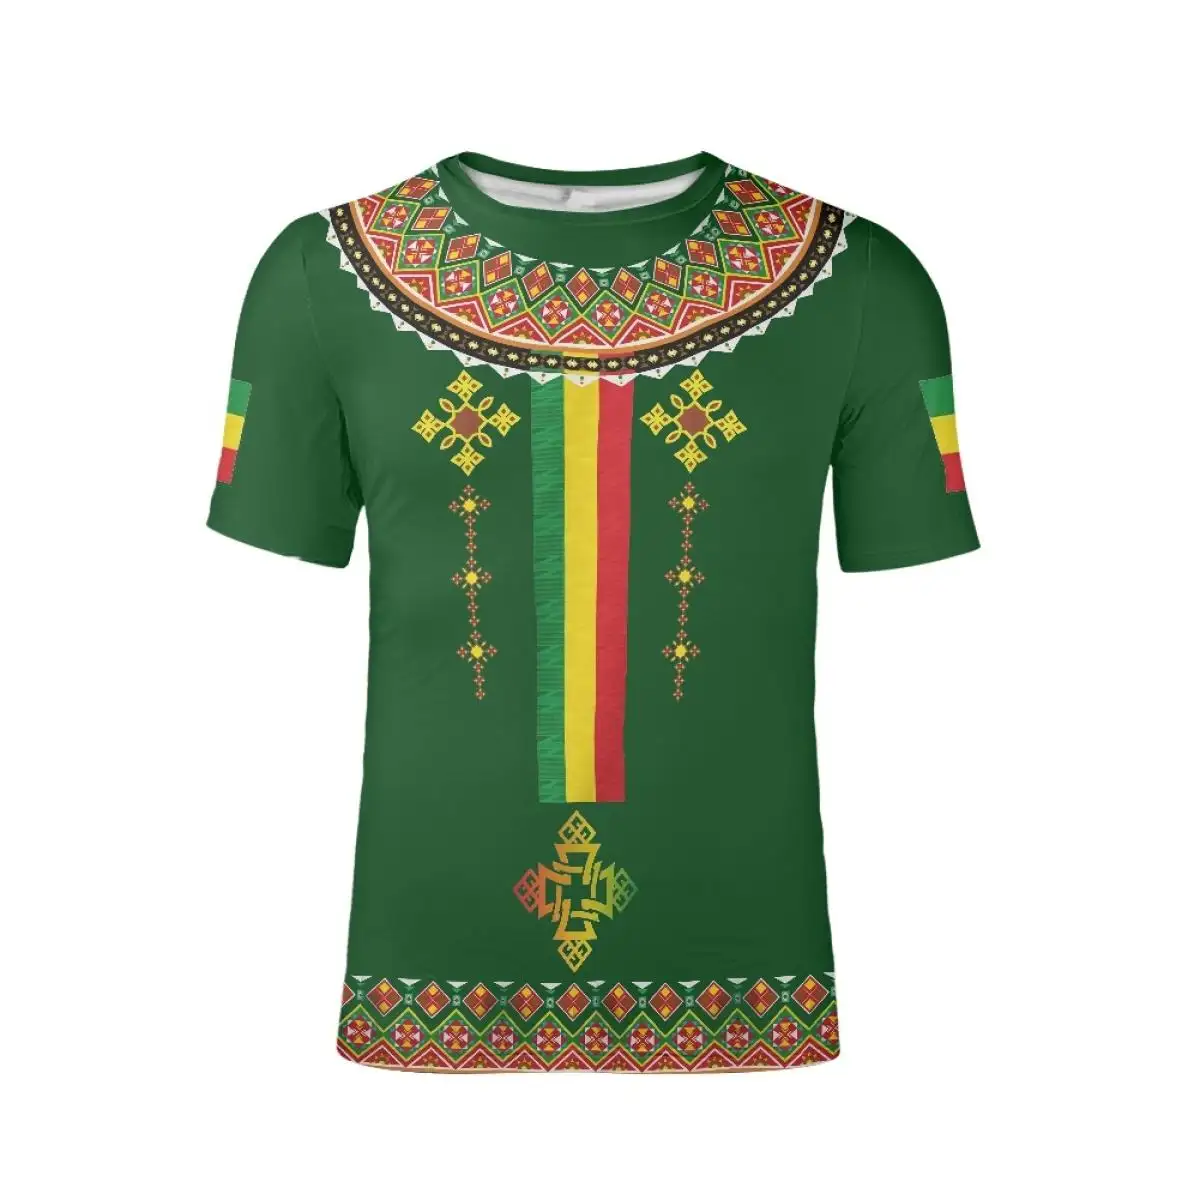 رخيصة بالجملة Habesha الاثيوبية تصميم حجم كبير قمصان رجالية تنفس مخصص العلامة الخاصة إثيوبيا الأخضر تي شيرت عارضة